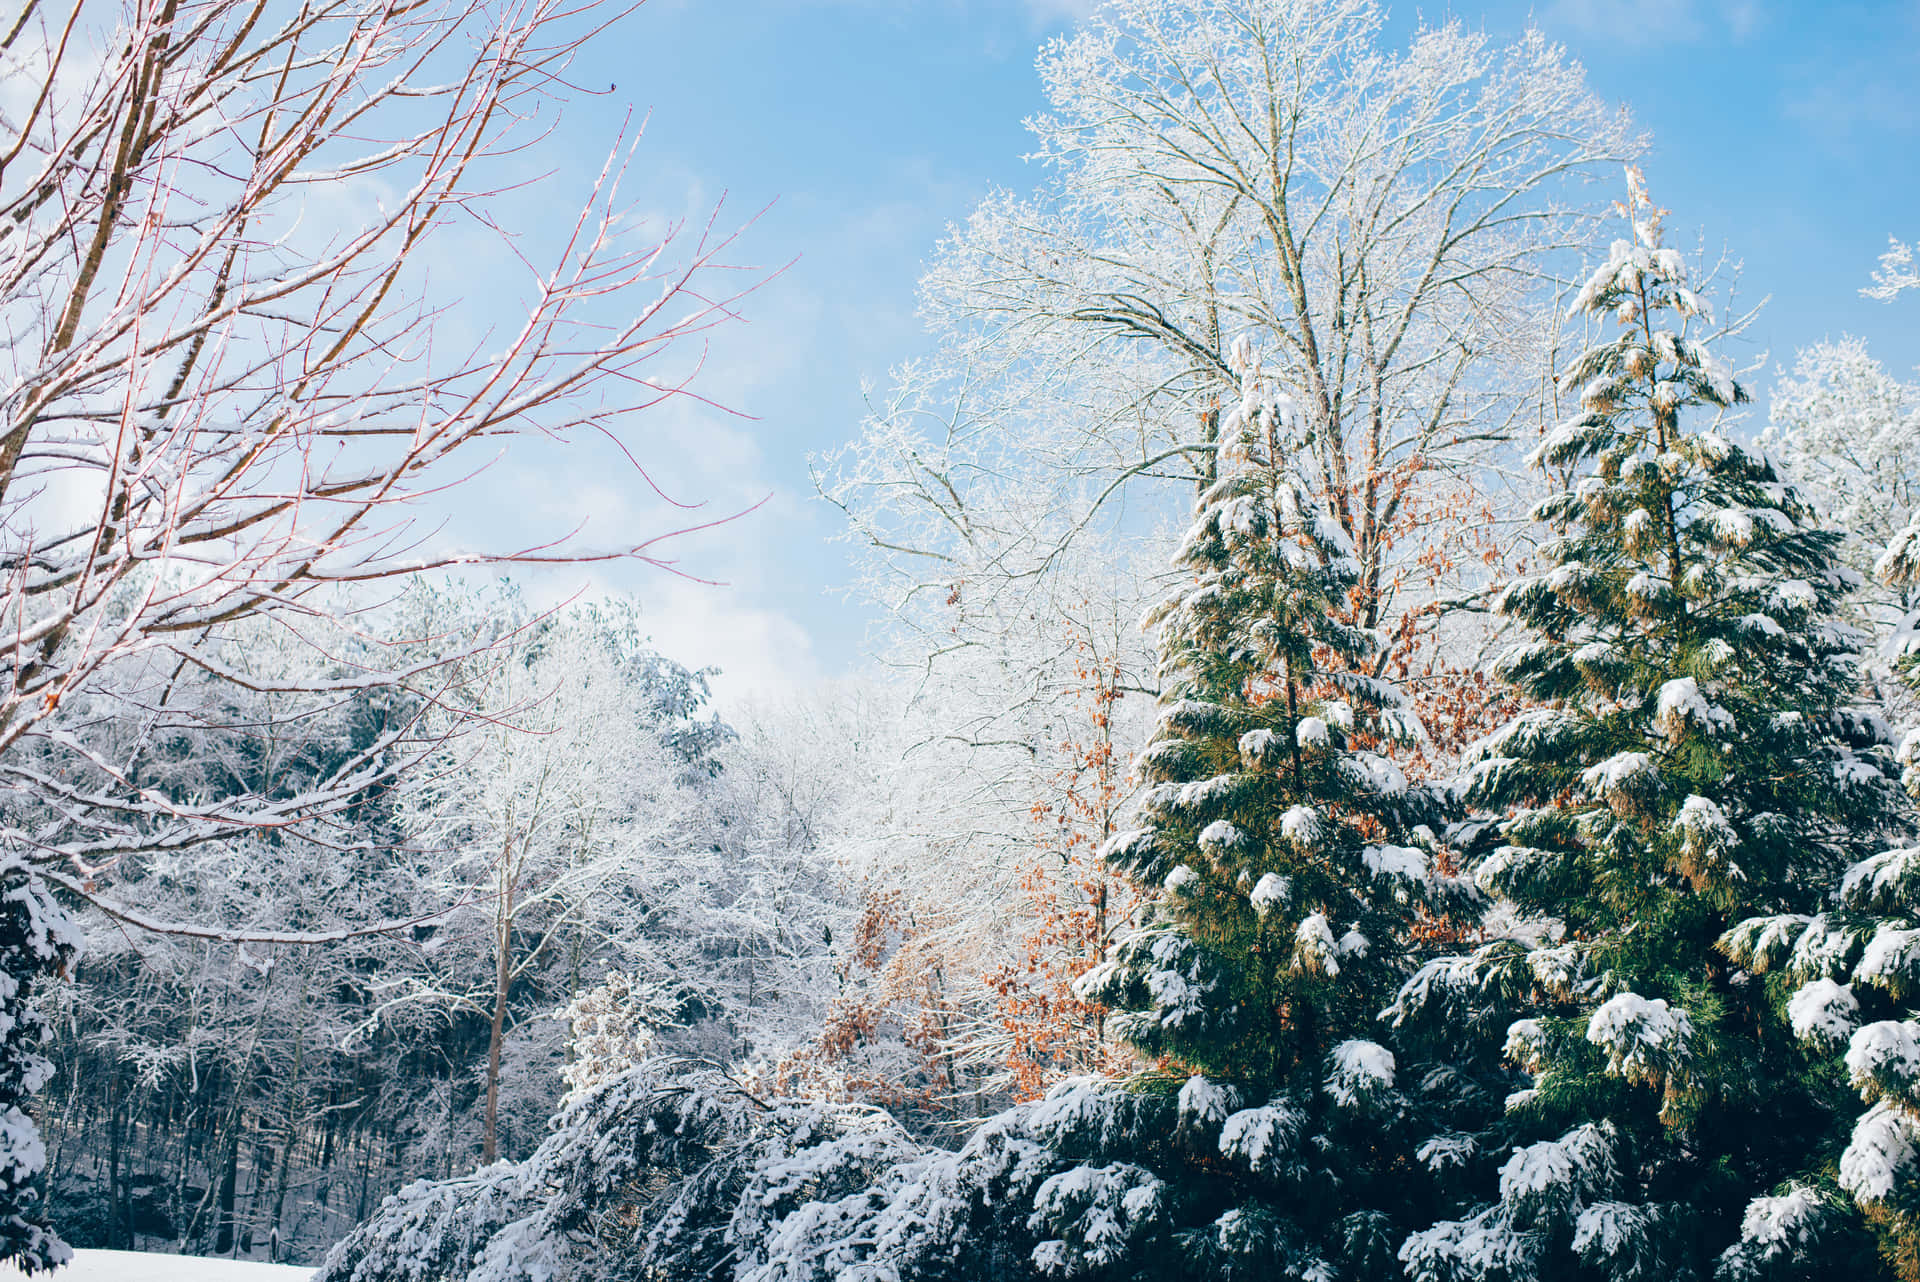 Celebrea Alegria Do Inverno Em Uma Paisagem De Neve De Natal! Papel de Parede